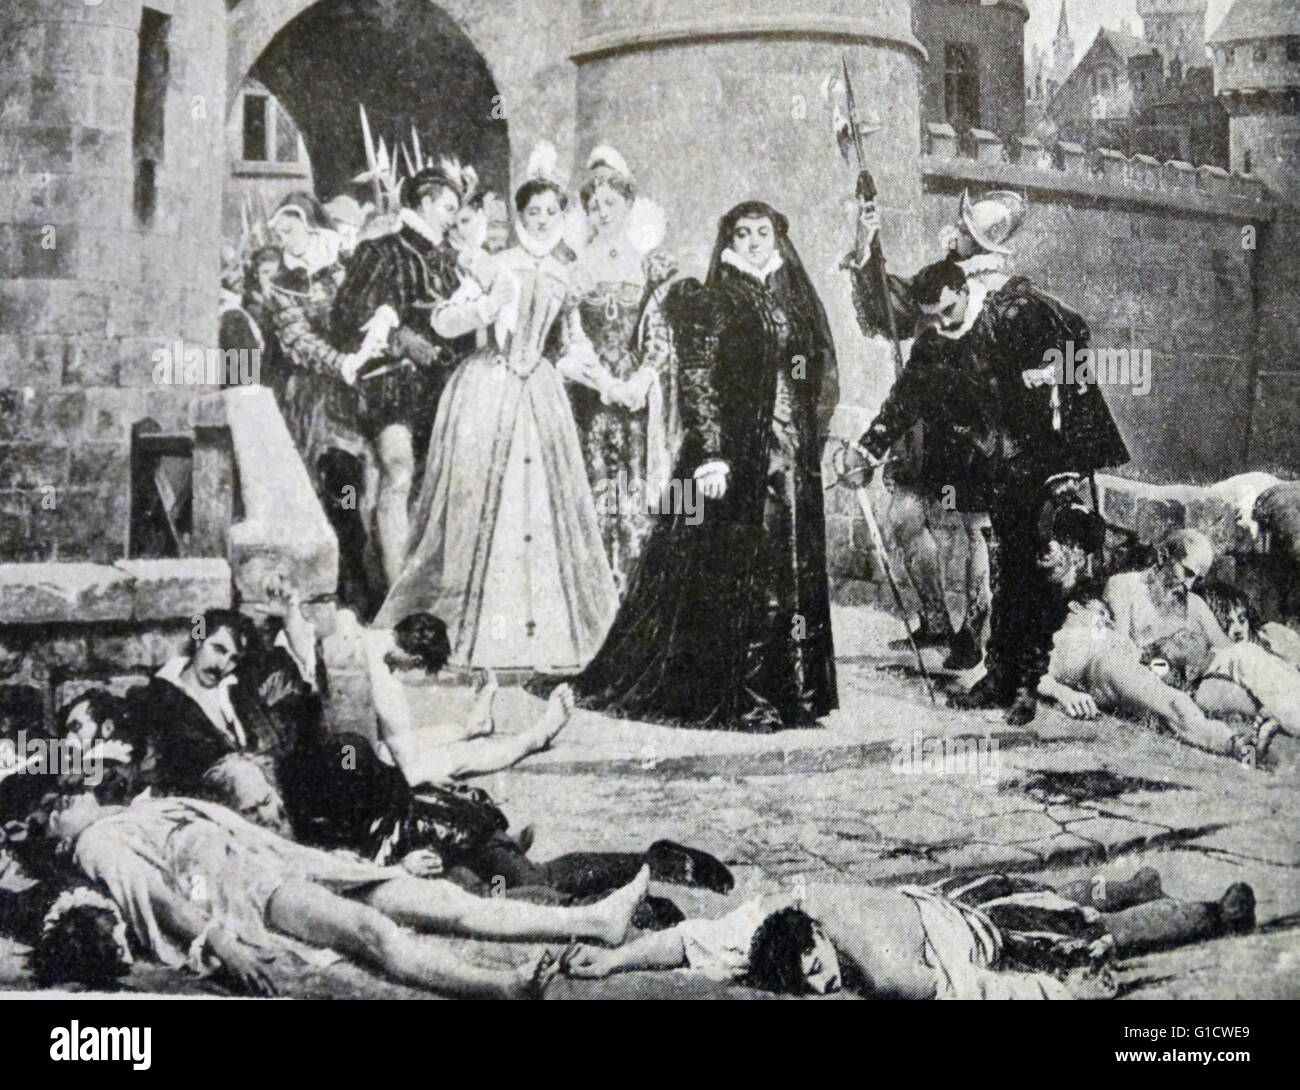 Gemälde, Catherine de Medici (1519-1589) Anschluss an die St.-Bartholomäus Tag Massaker anzeigen. Das Massaker war eine Zielgruppe der Morde und eine Welle von katholischen Mob Gewalt, gegen die Hugenotten während der französischen Religionskriege. Datiert aus dem 16. Jahrhundert Stockfoto